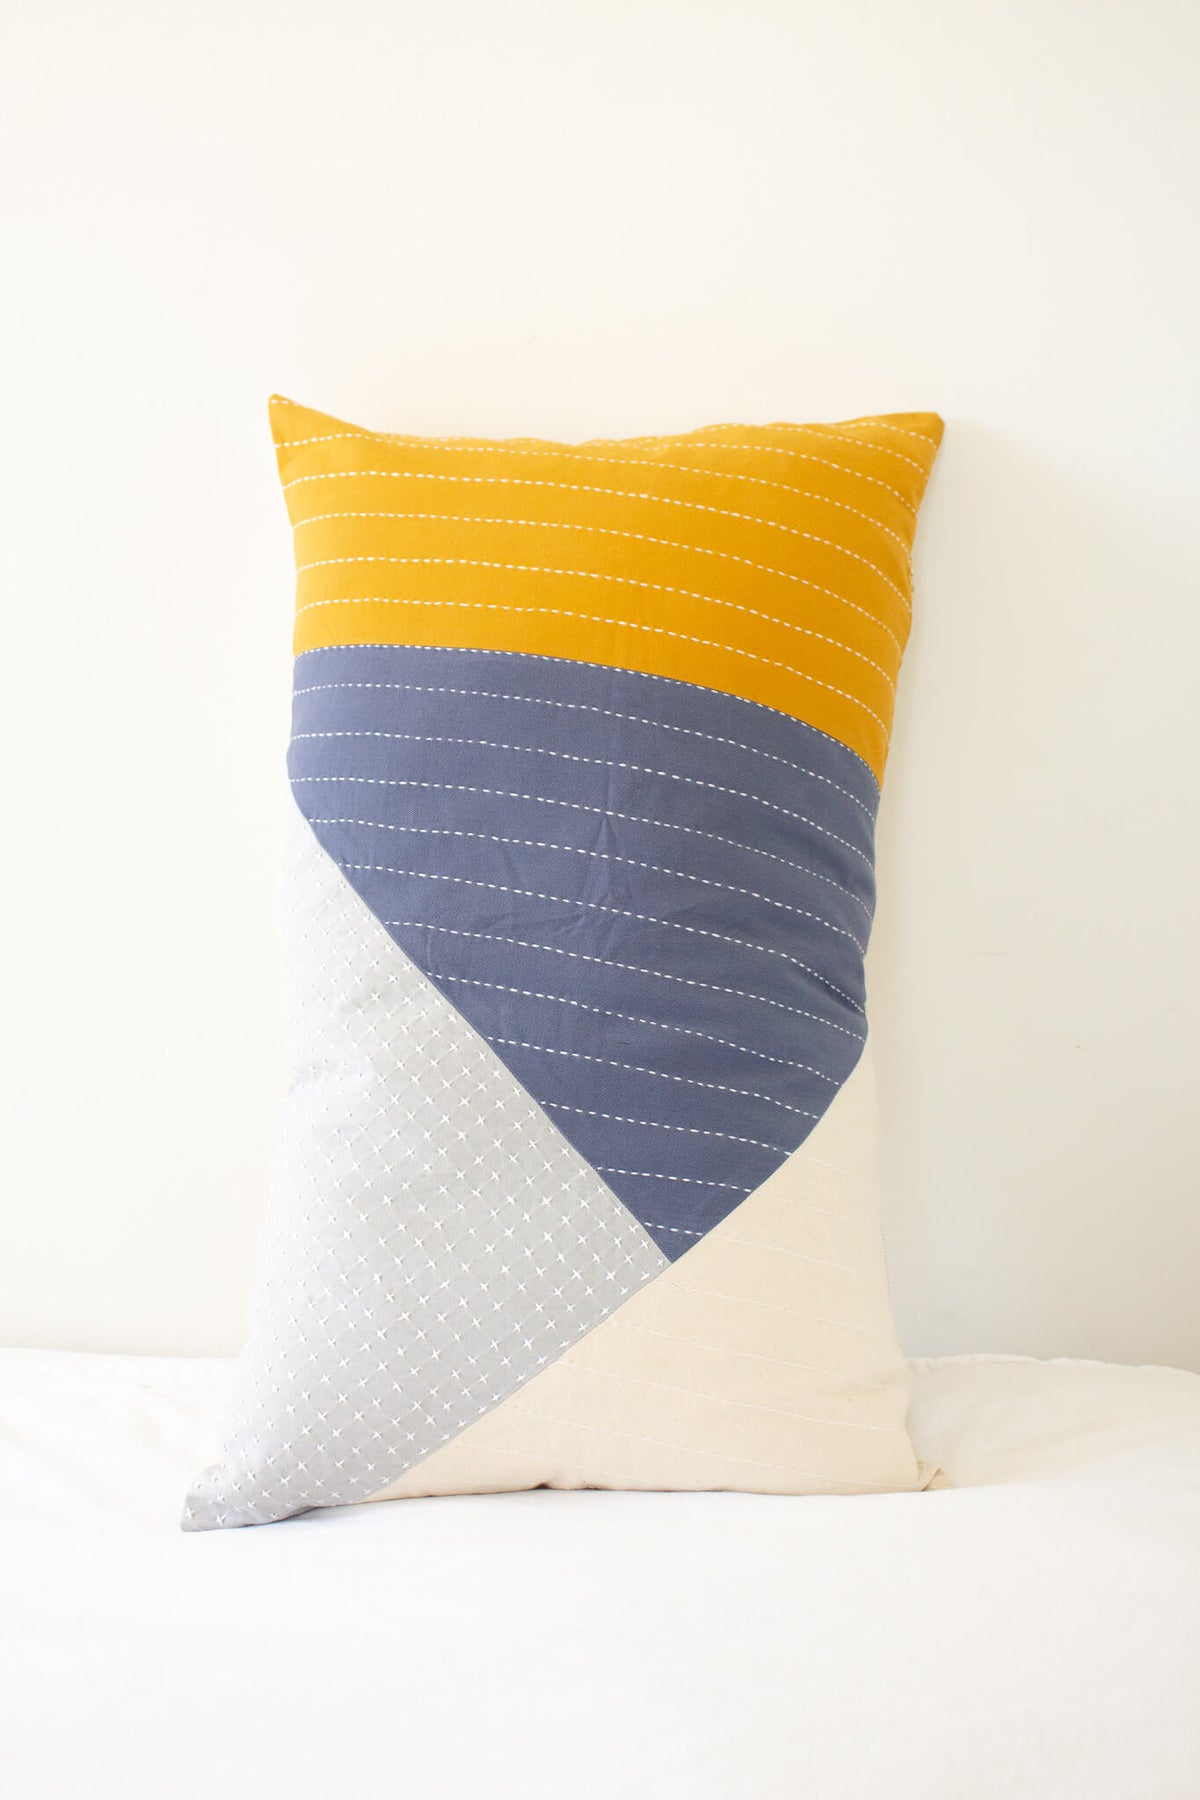 Anchal Project Asha Colorblock Lumbar Pillow Cover